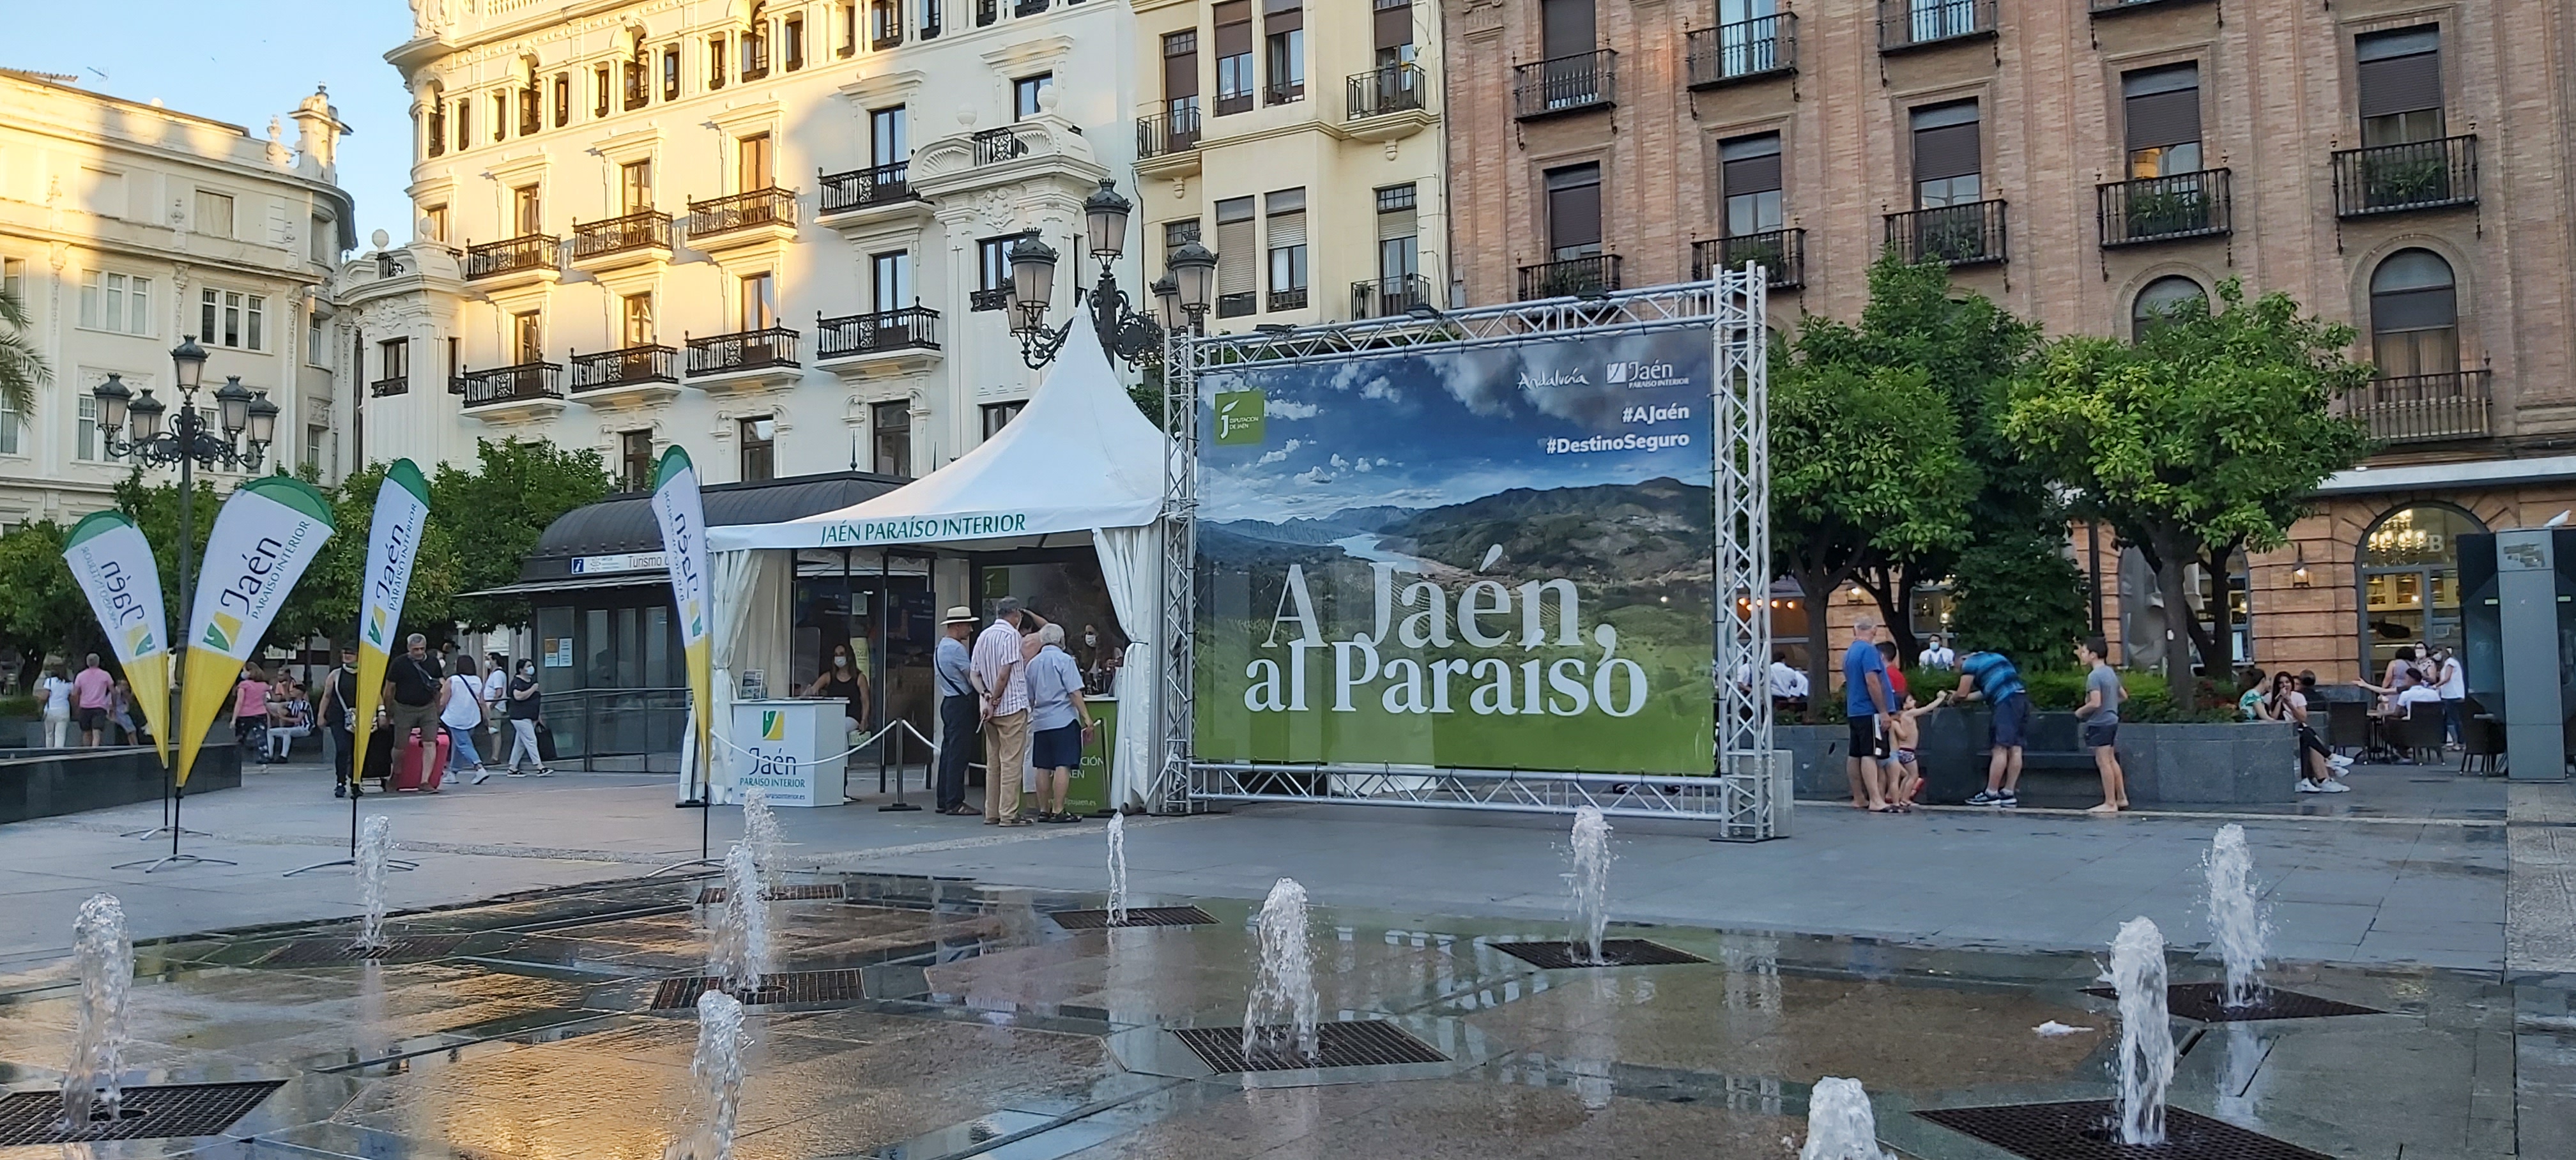 Jaén promociona sus bondades turísticas en pleno centro de Granada